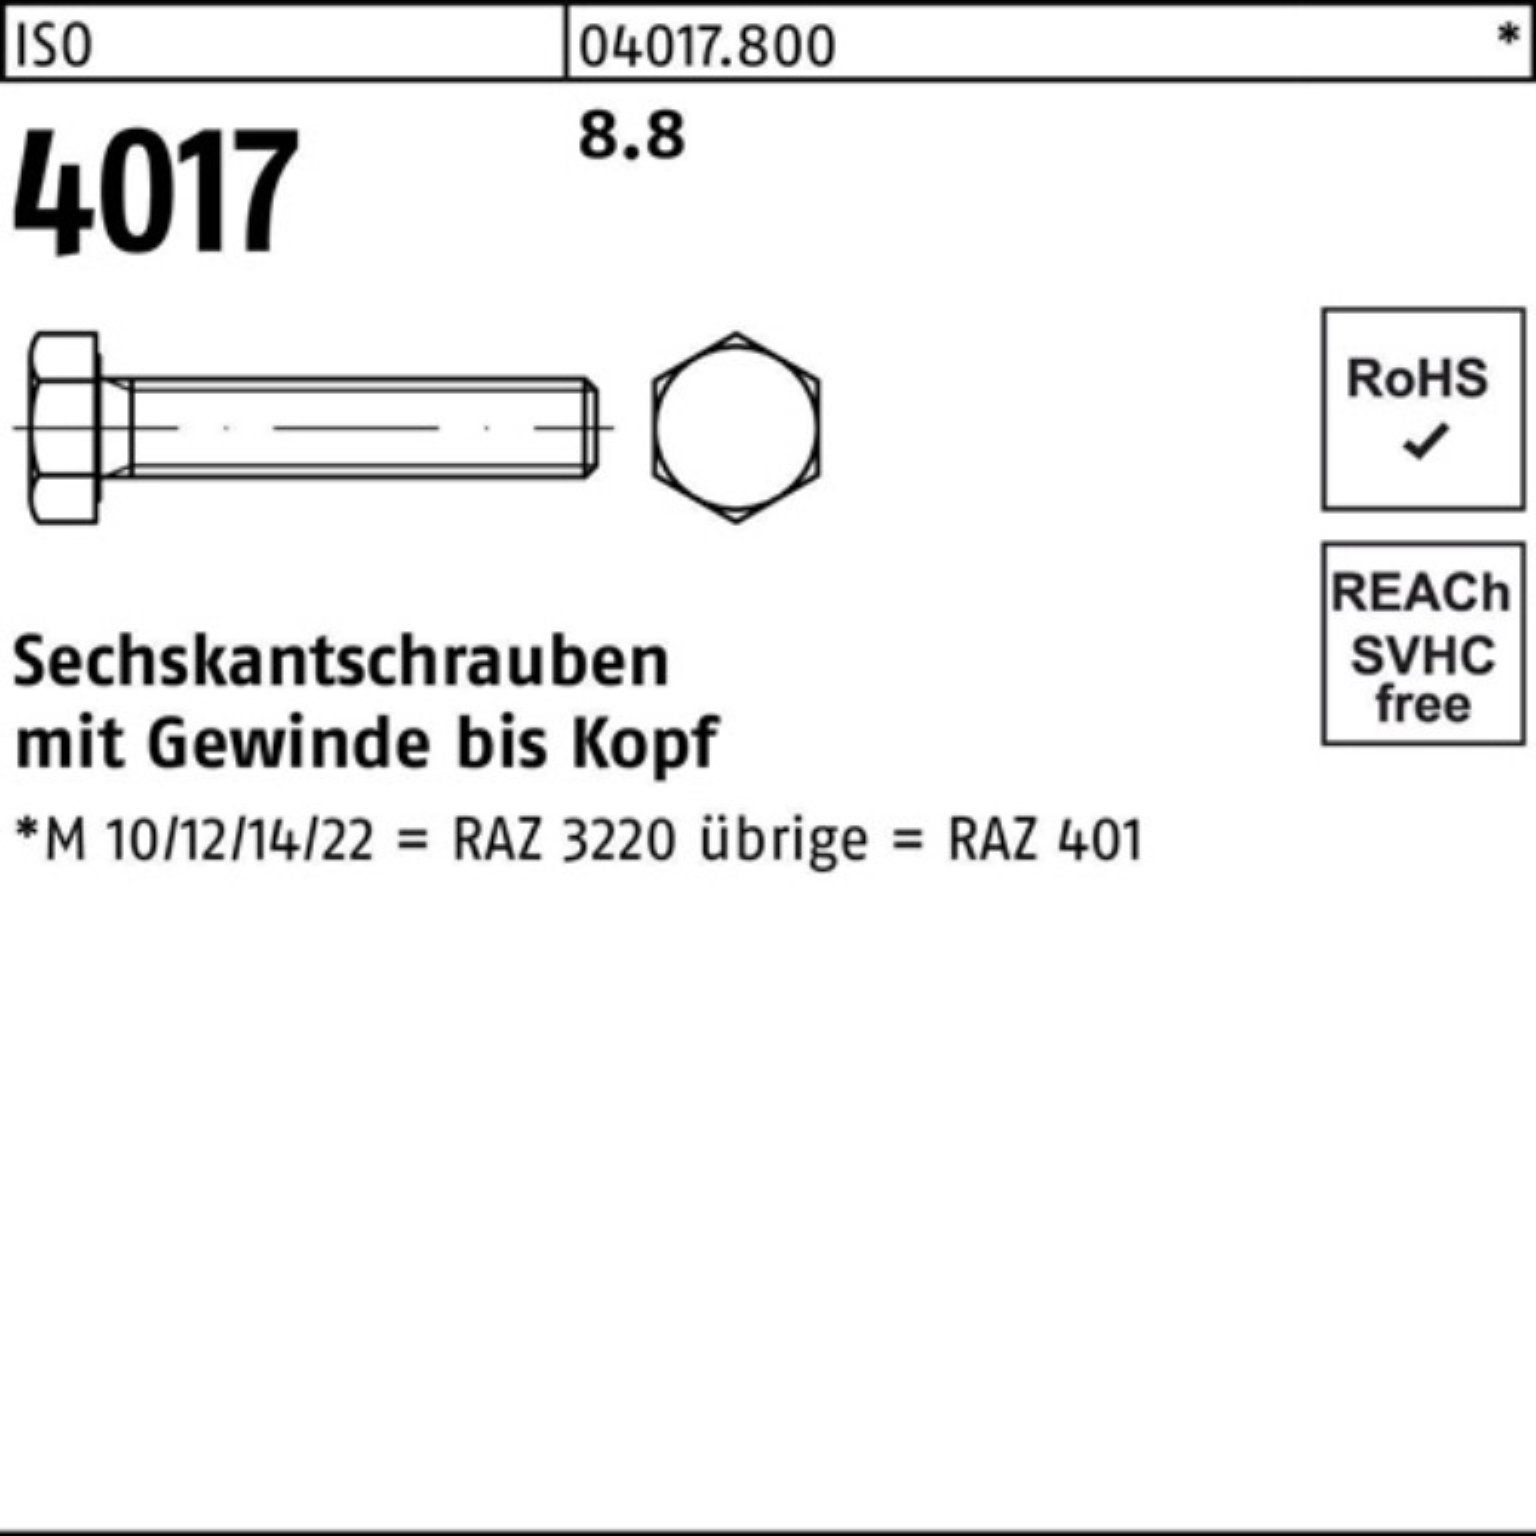 Bufab Sechskantschraube 100er 4017 Stück Sechskantschraube 8.8 ISO Pack ISO 401 25 M22x 65 VG